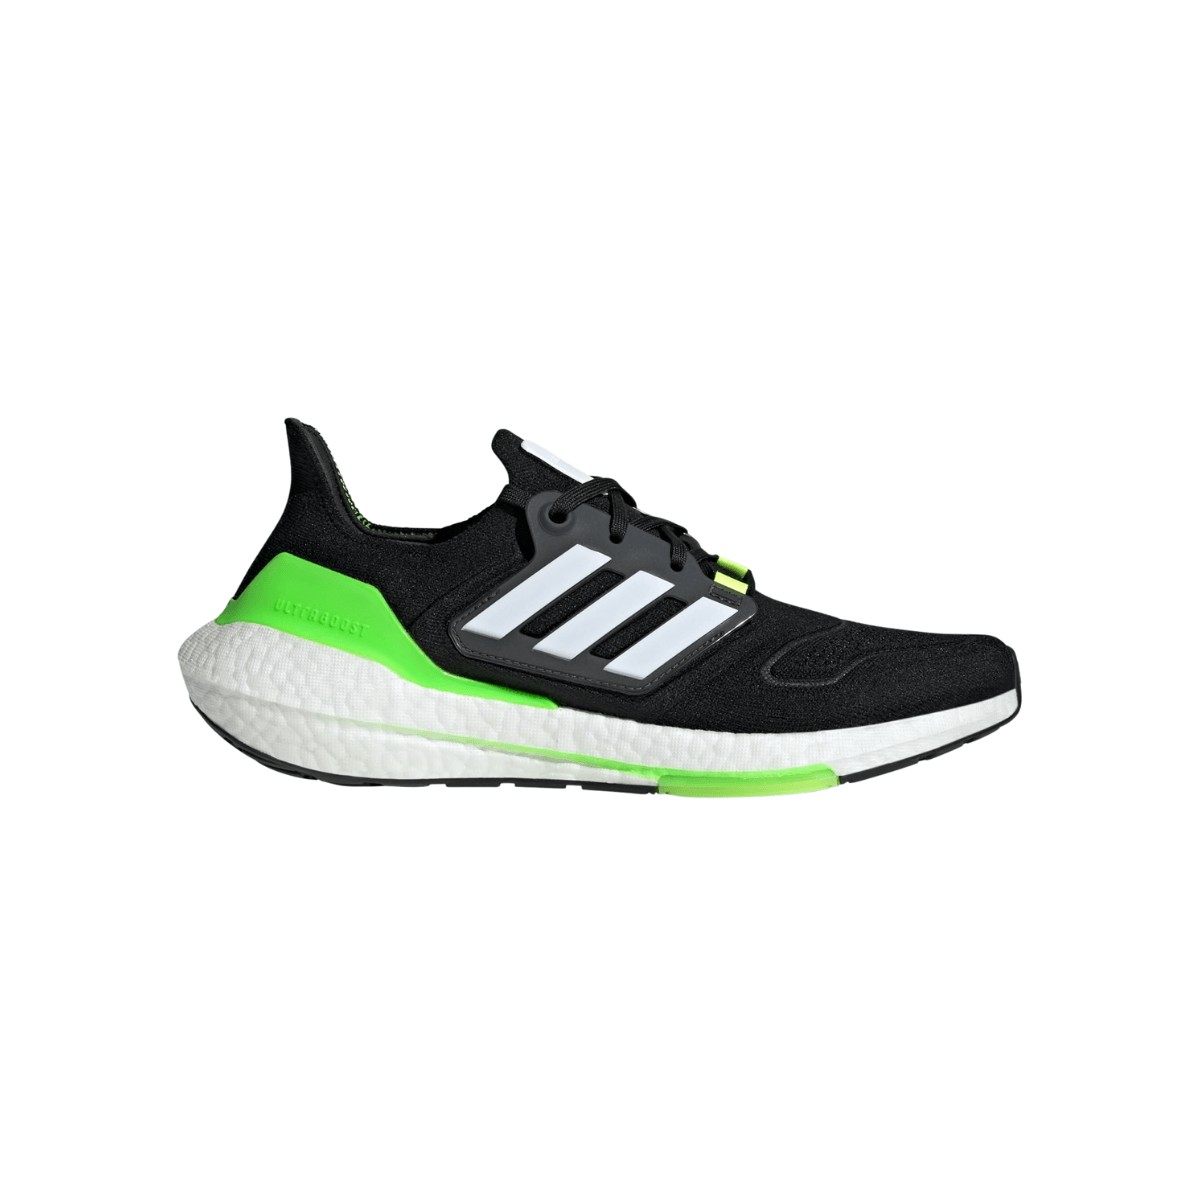 Borde Por cierto Hundimiento Adidas Ultraboost 22: características y opiniones - Zapatillas running |  Runnea